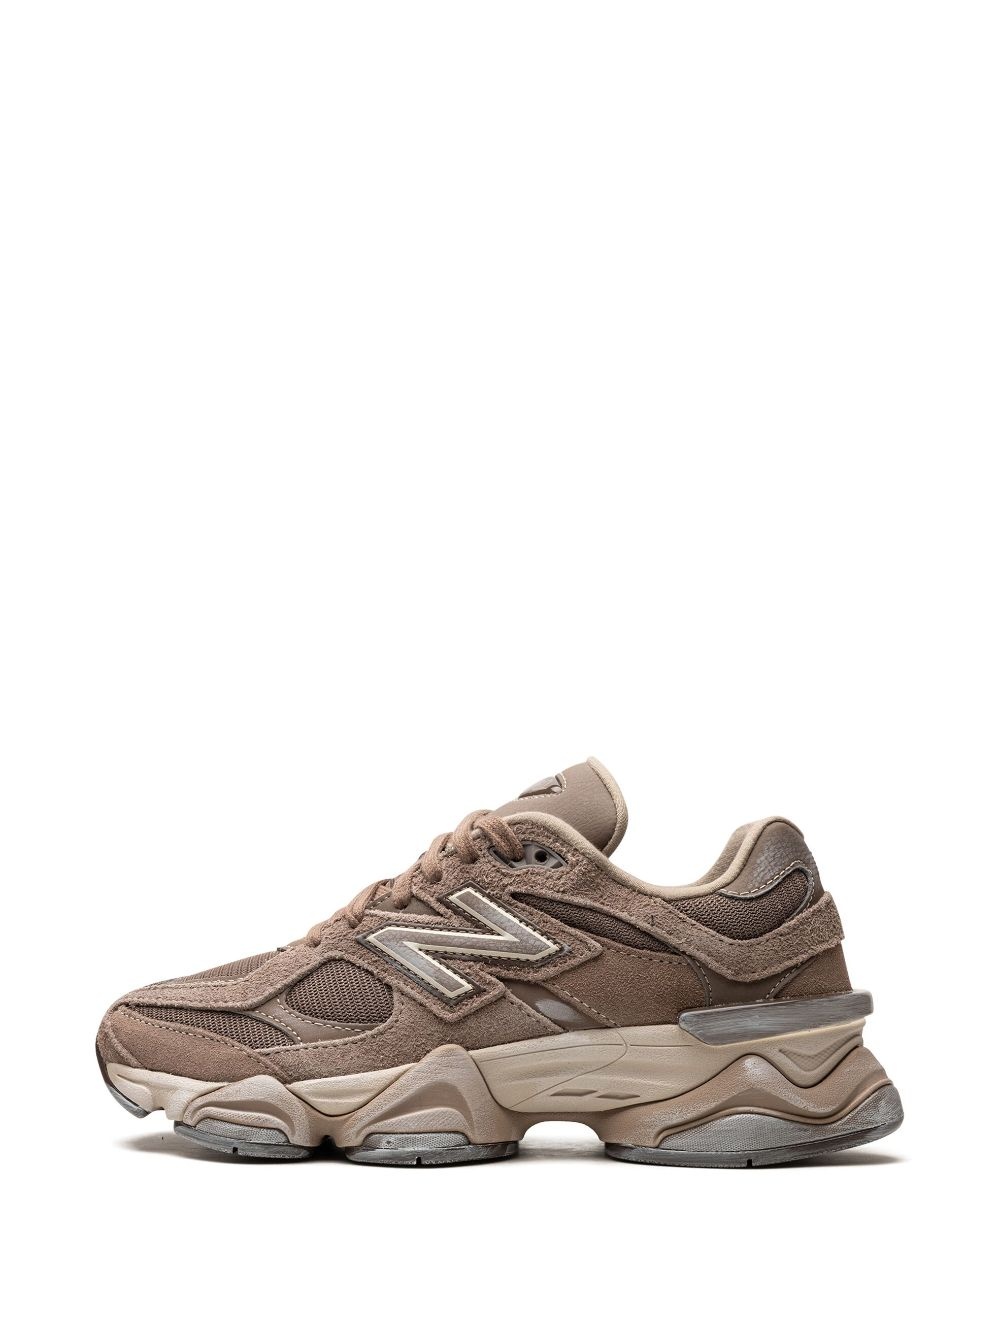 9060 "Mushroom Brown" sneakers - 7